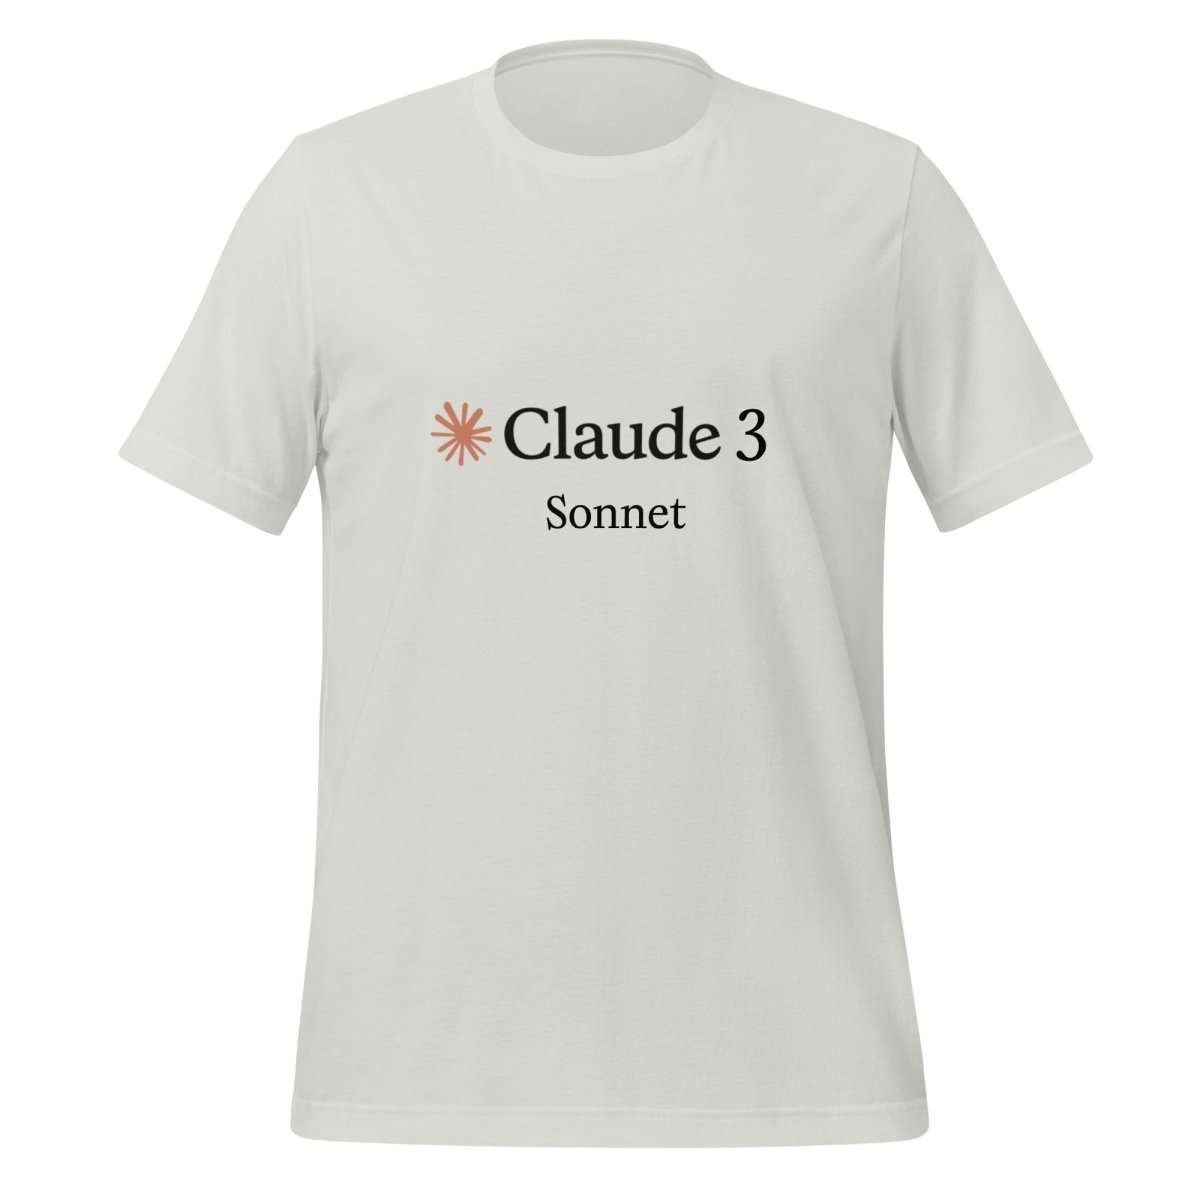 Claude 3 Sonnet T - Shirt (unisex) - Silver - AI Store